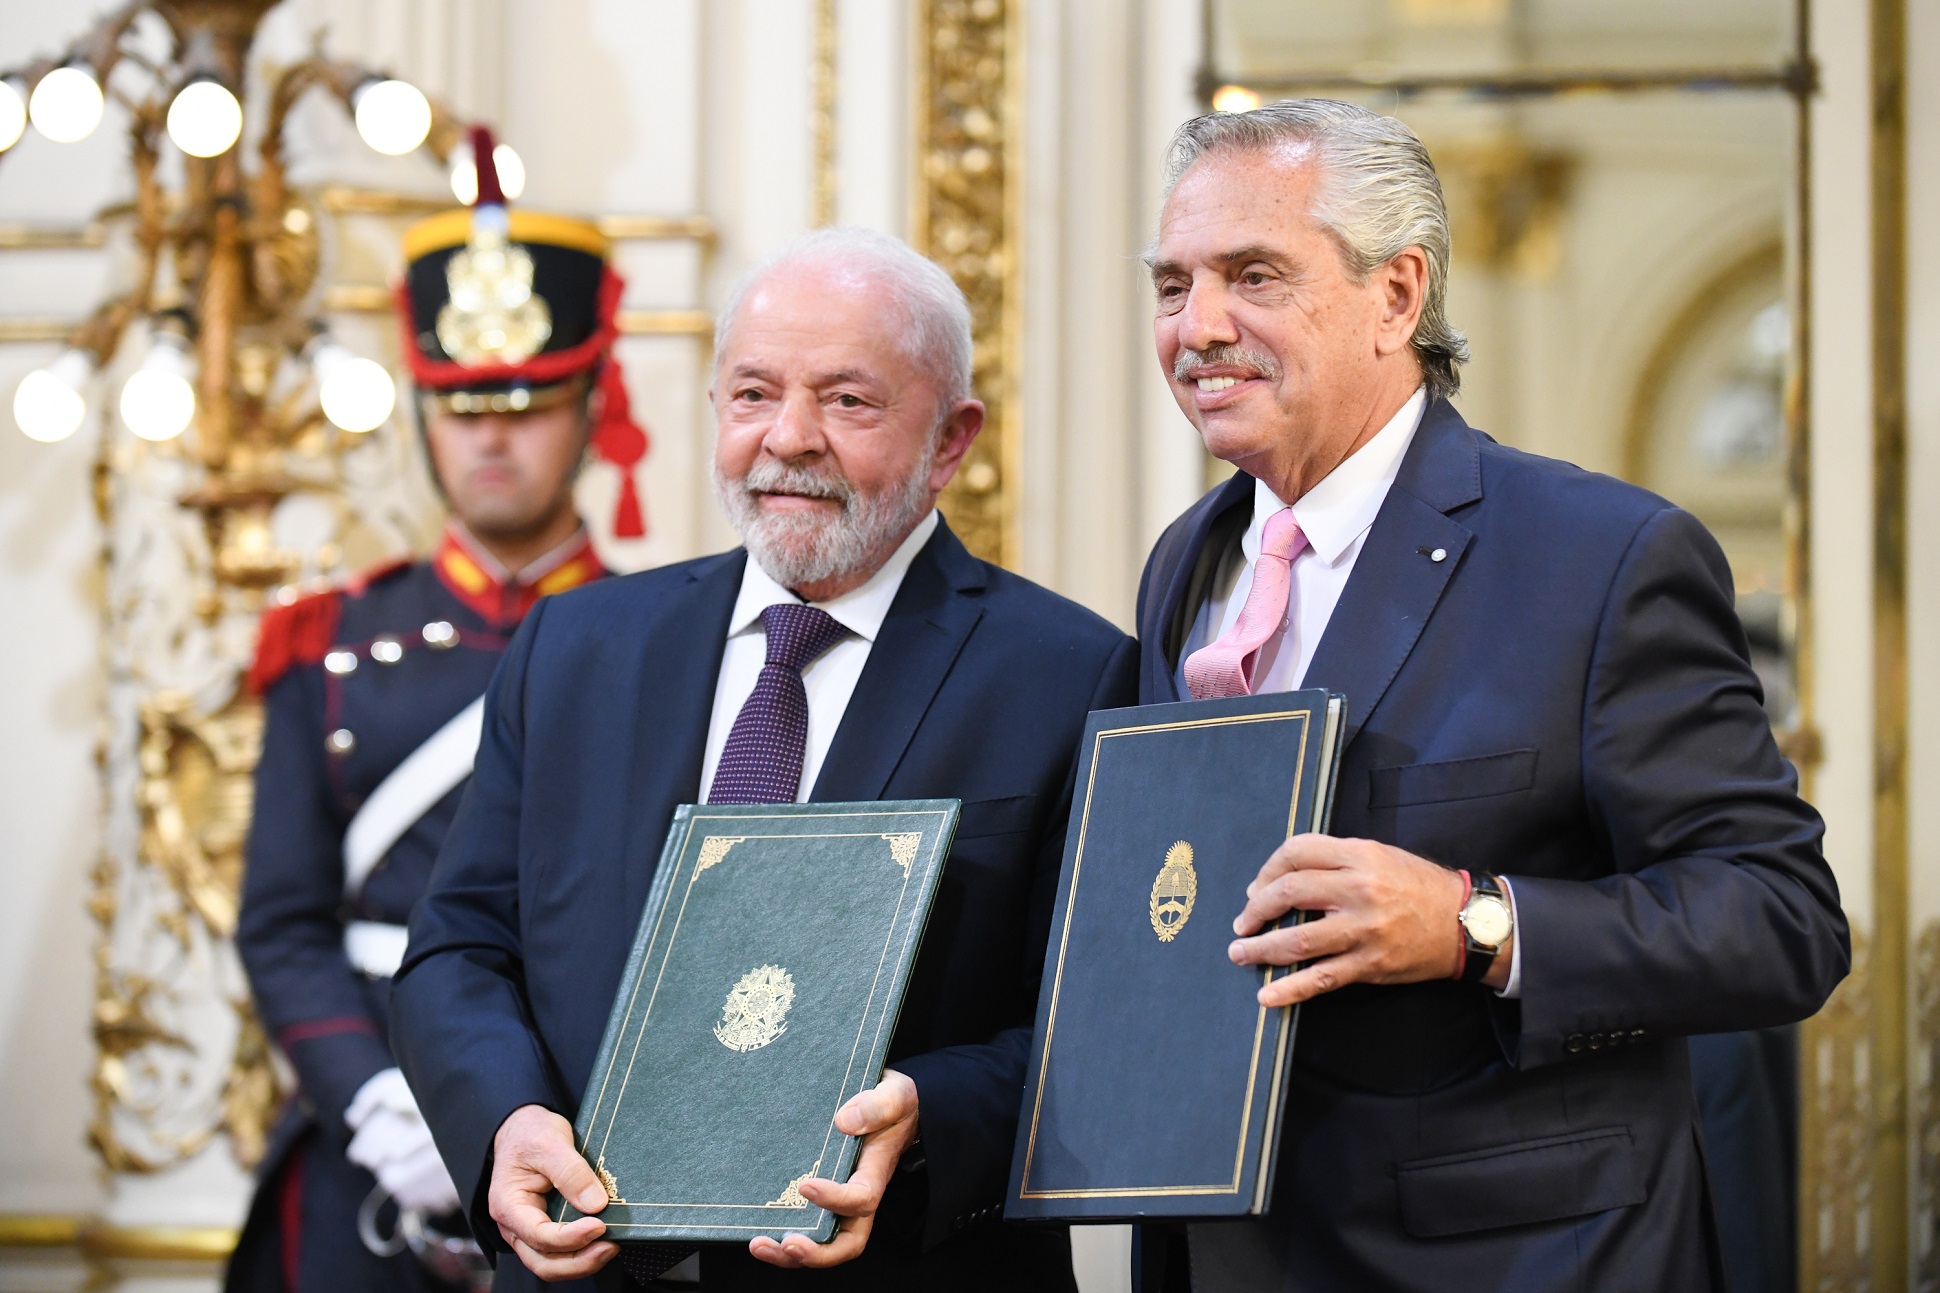 El presidente encabezó junto a su par de Brasil, Luiz Inácio Lula da Silva, la firma de acuerdos de cooperación mutua